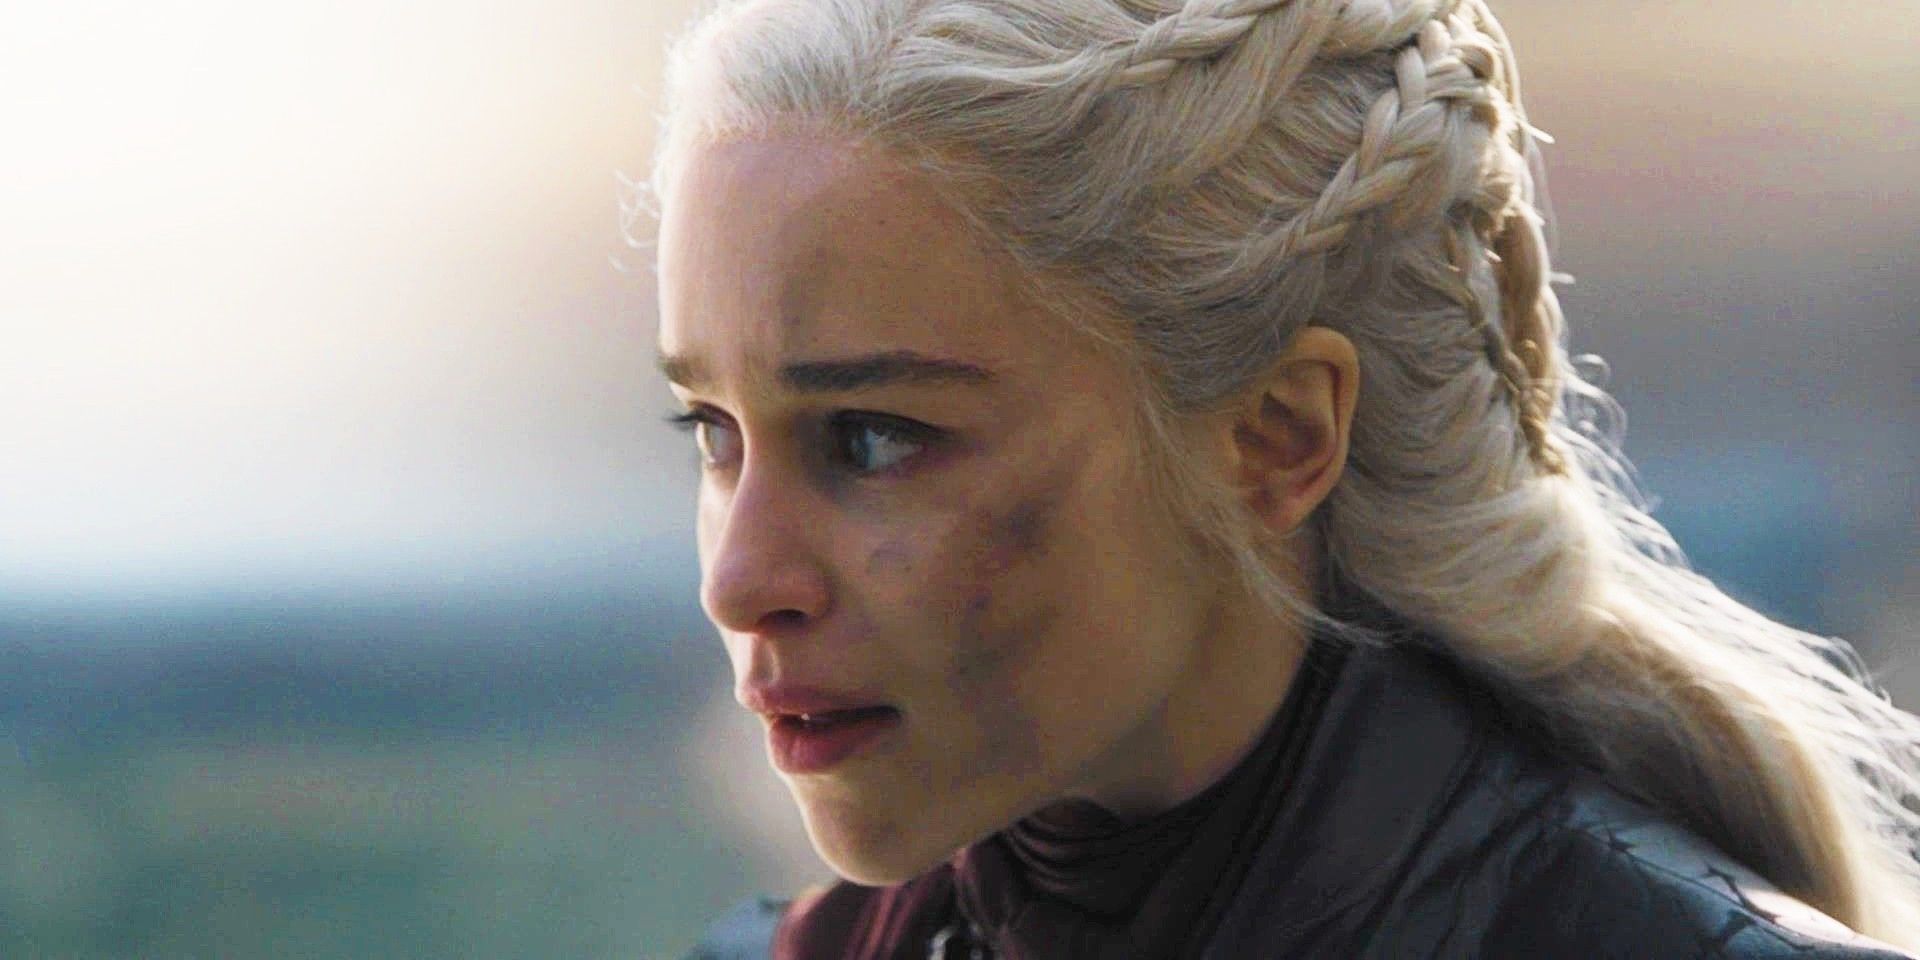 Daenerys Targaryen right before she attacks King's Landing on Game of Thrones